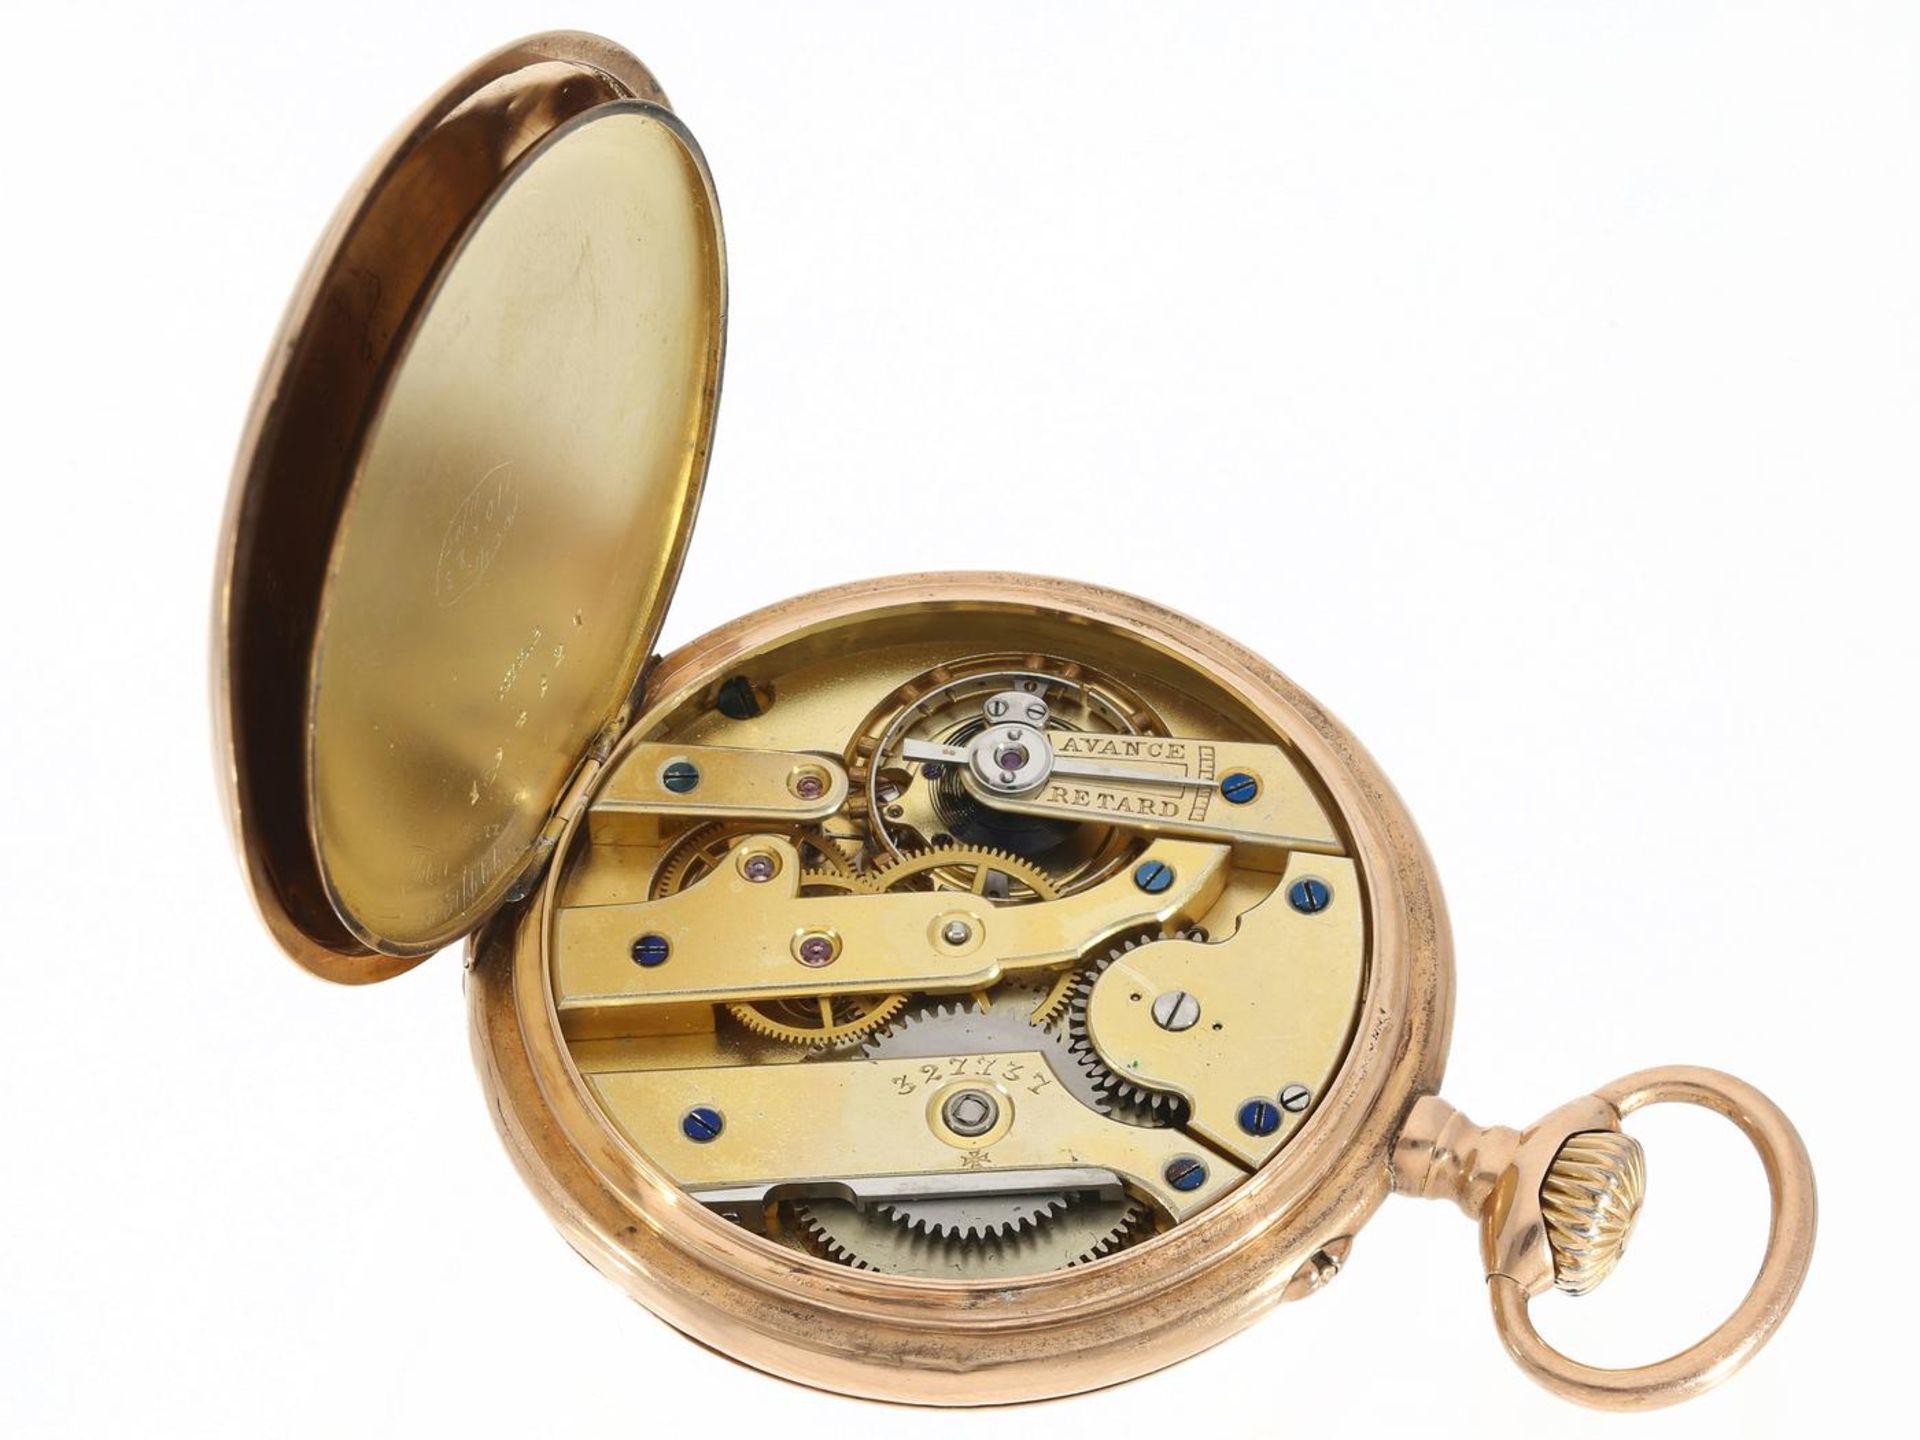 Taschenuhr: hochwertige Herrentaschenuhr, Ankerchronometer Vacheron & Constantin, geliefert an - Bild 3 aus 3